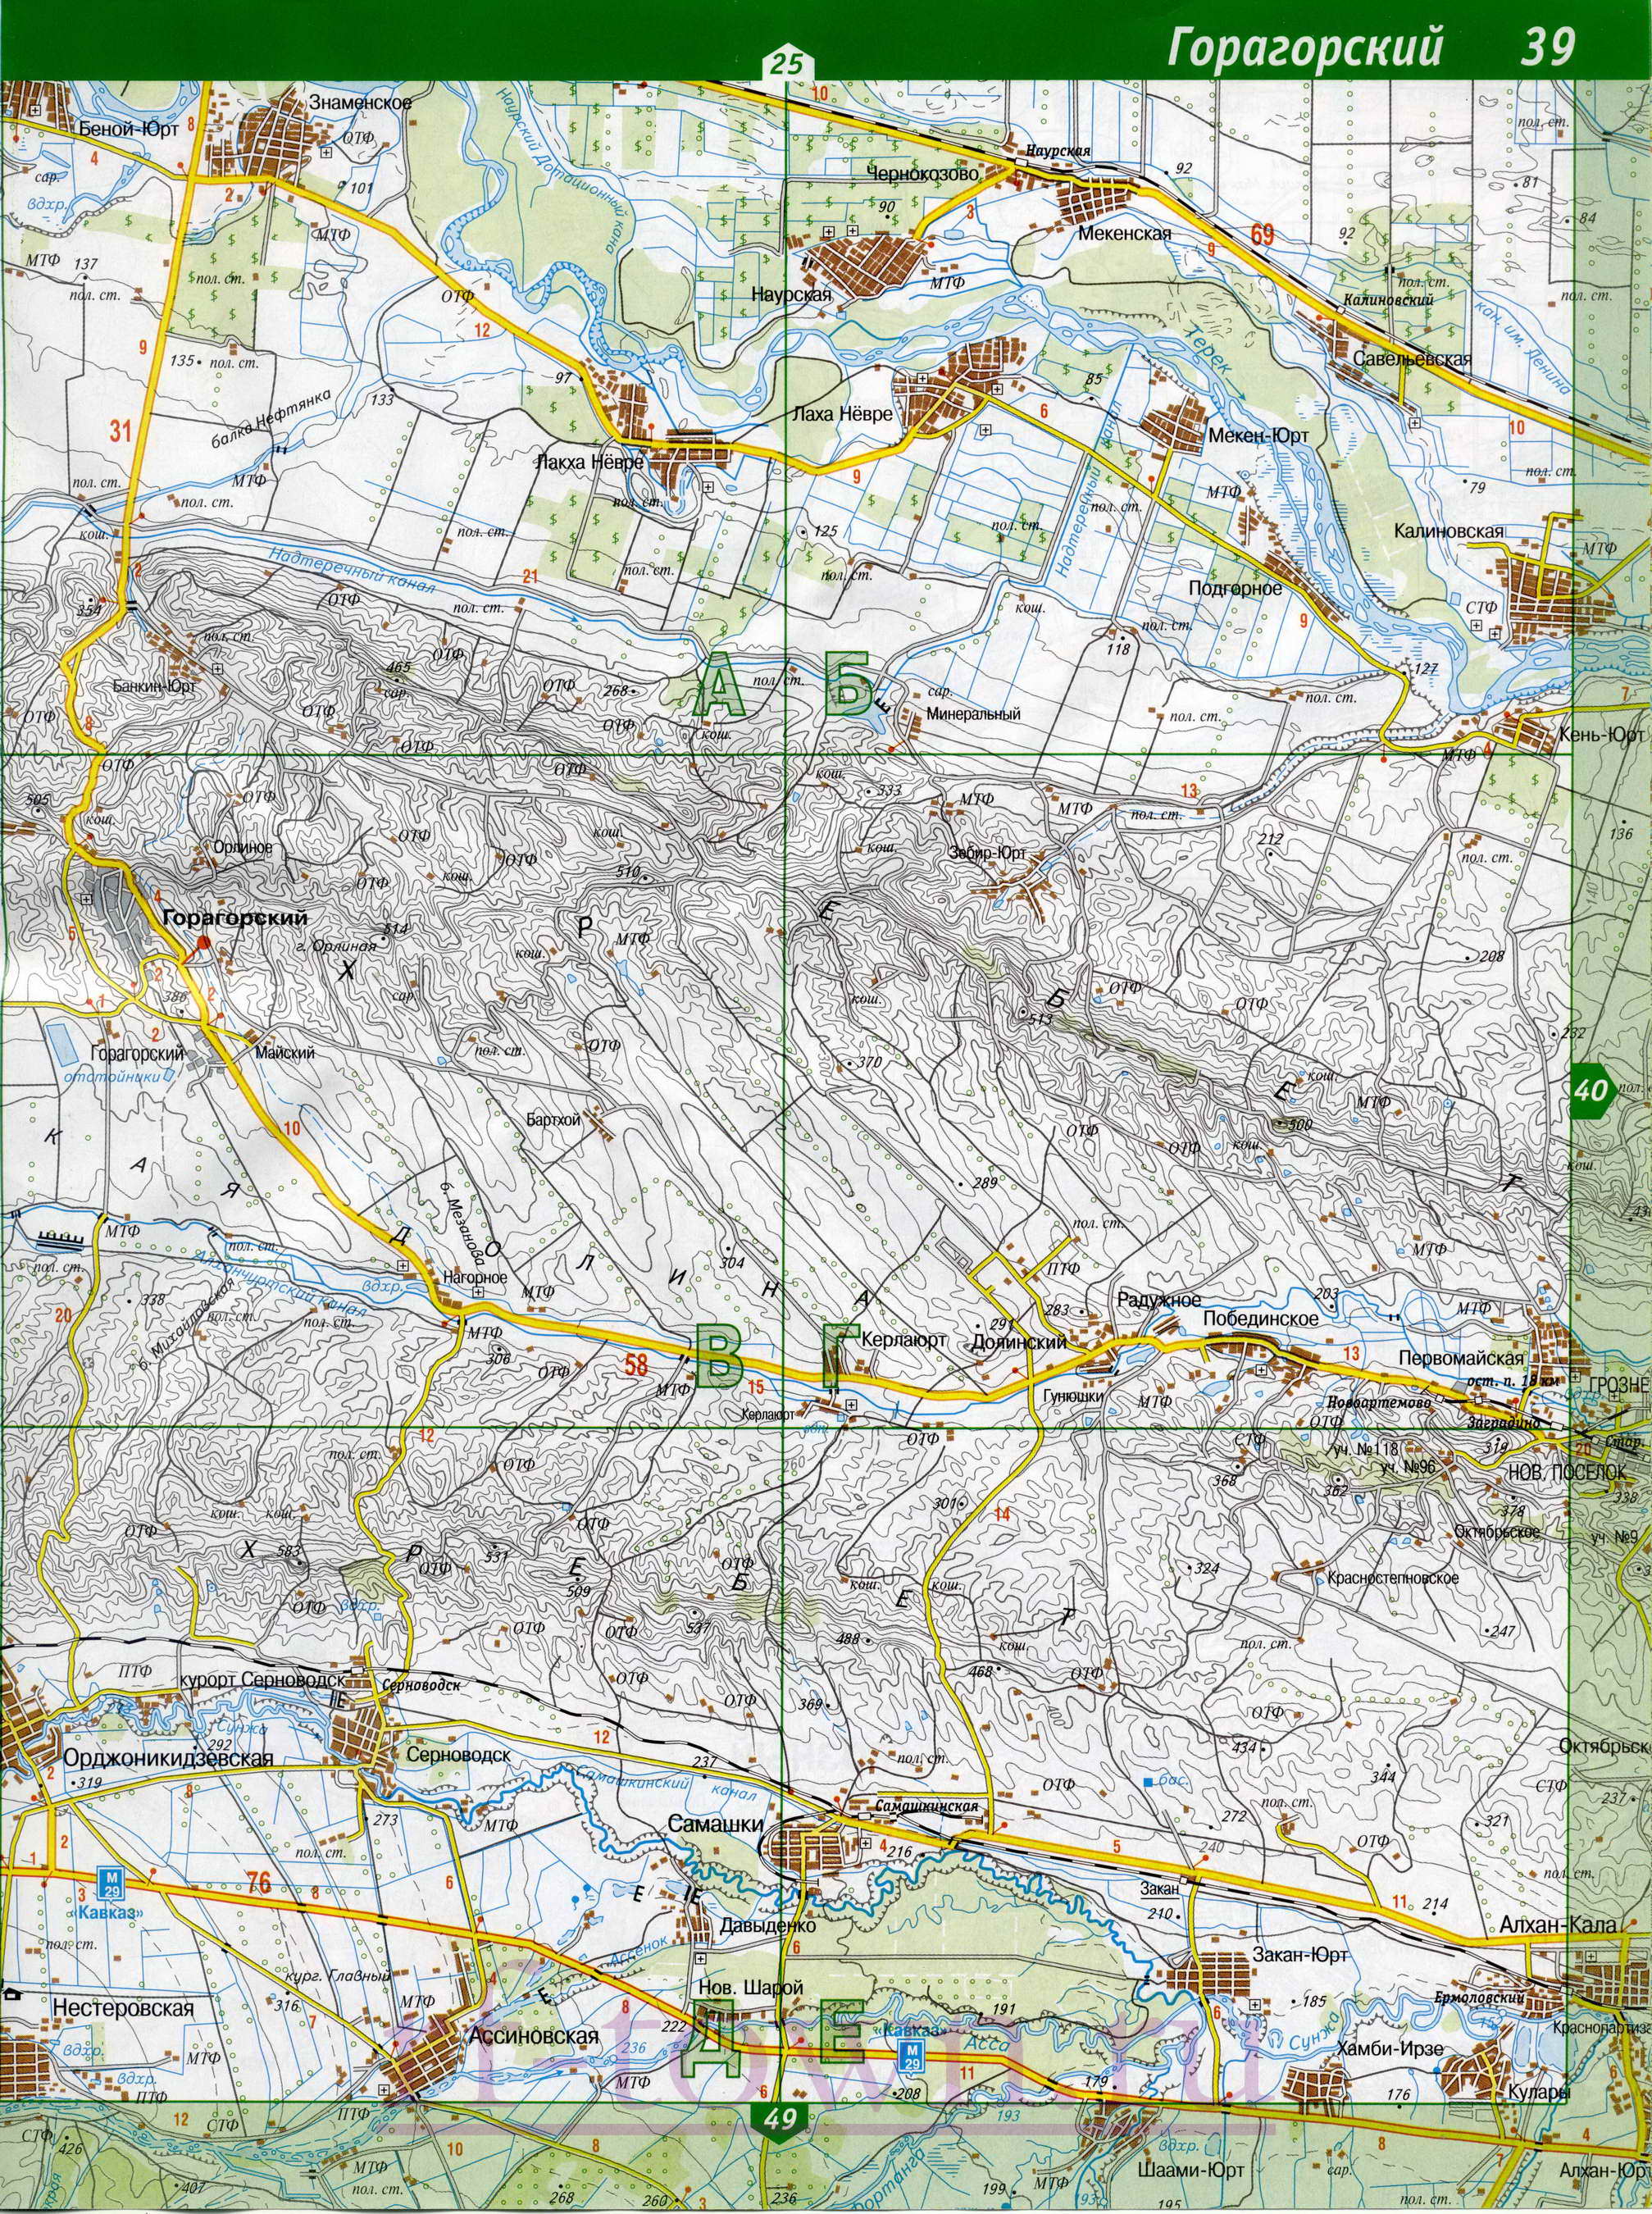 Карта Ингушетии. Подробная топографическая карта Ингушетии. Карта Ингушетии масштаба 1см:2км, B0 - 